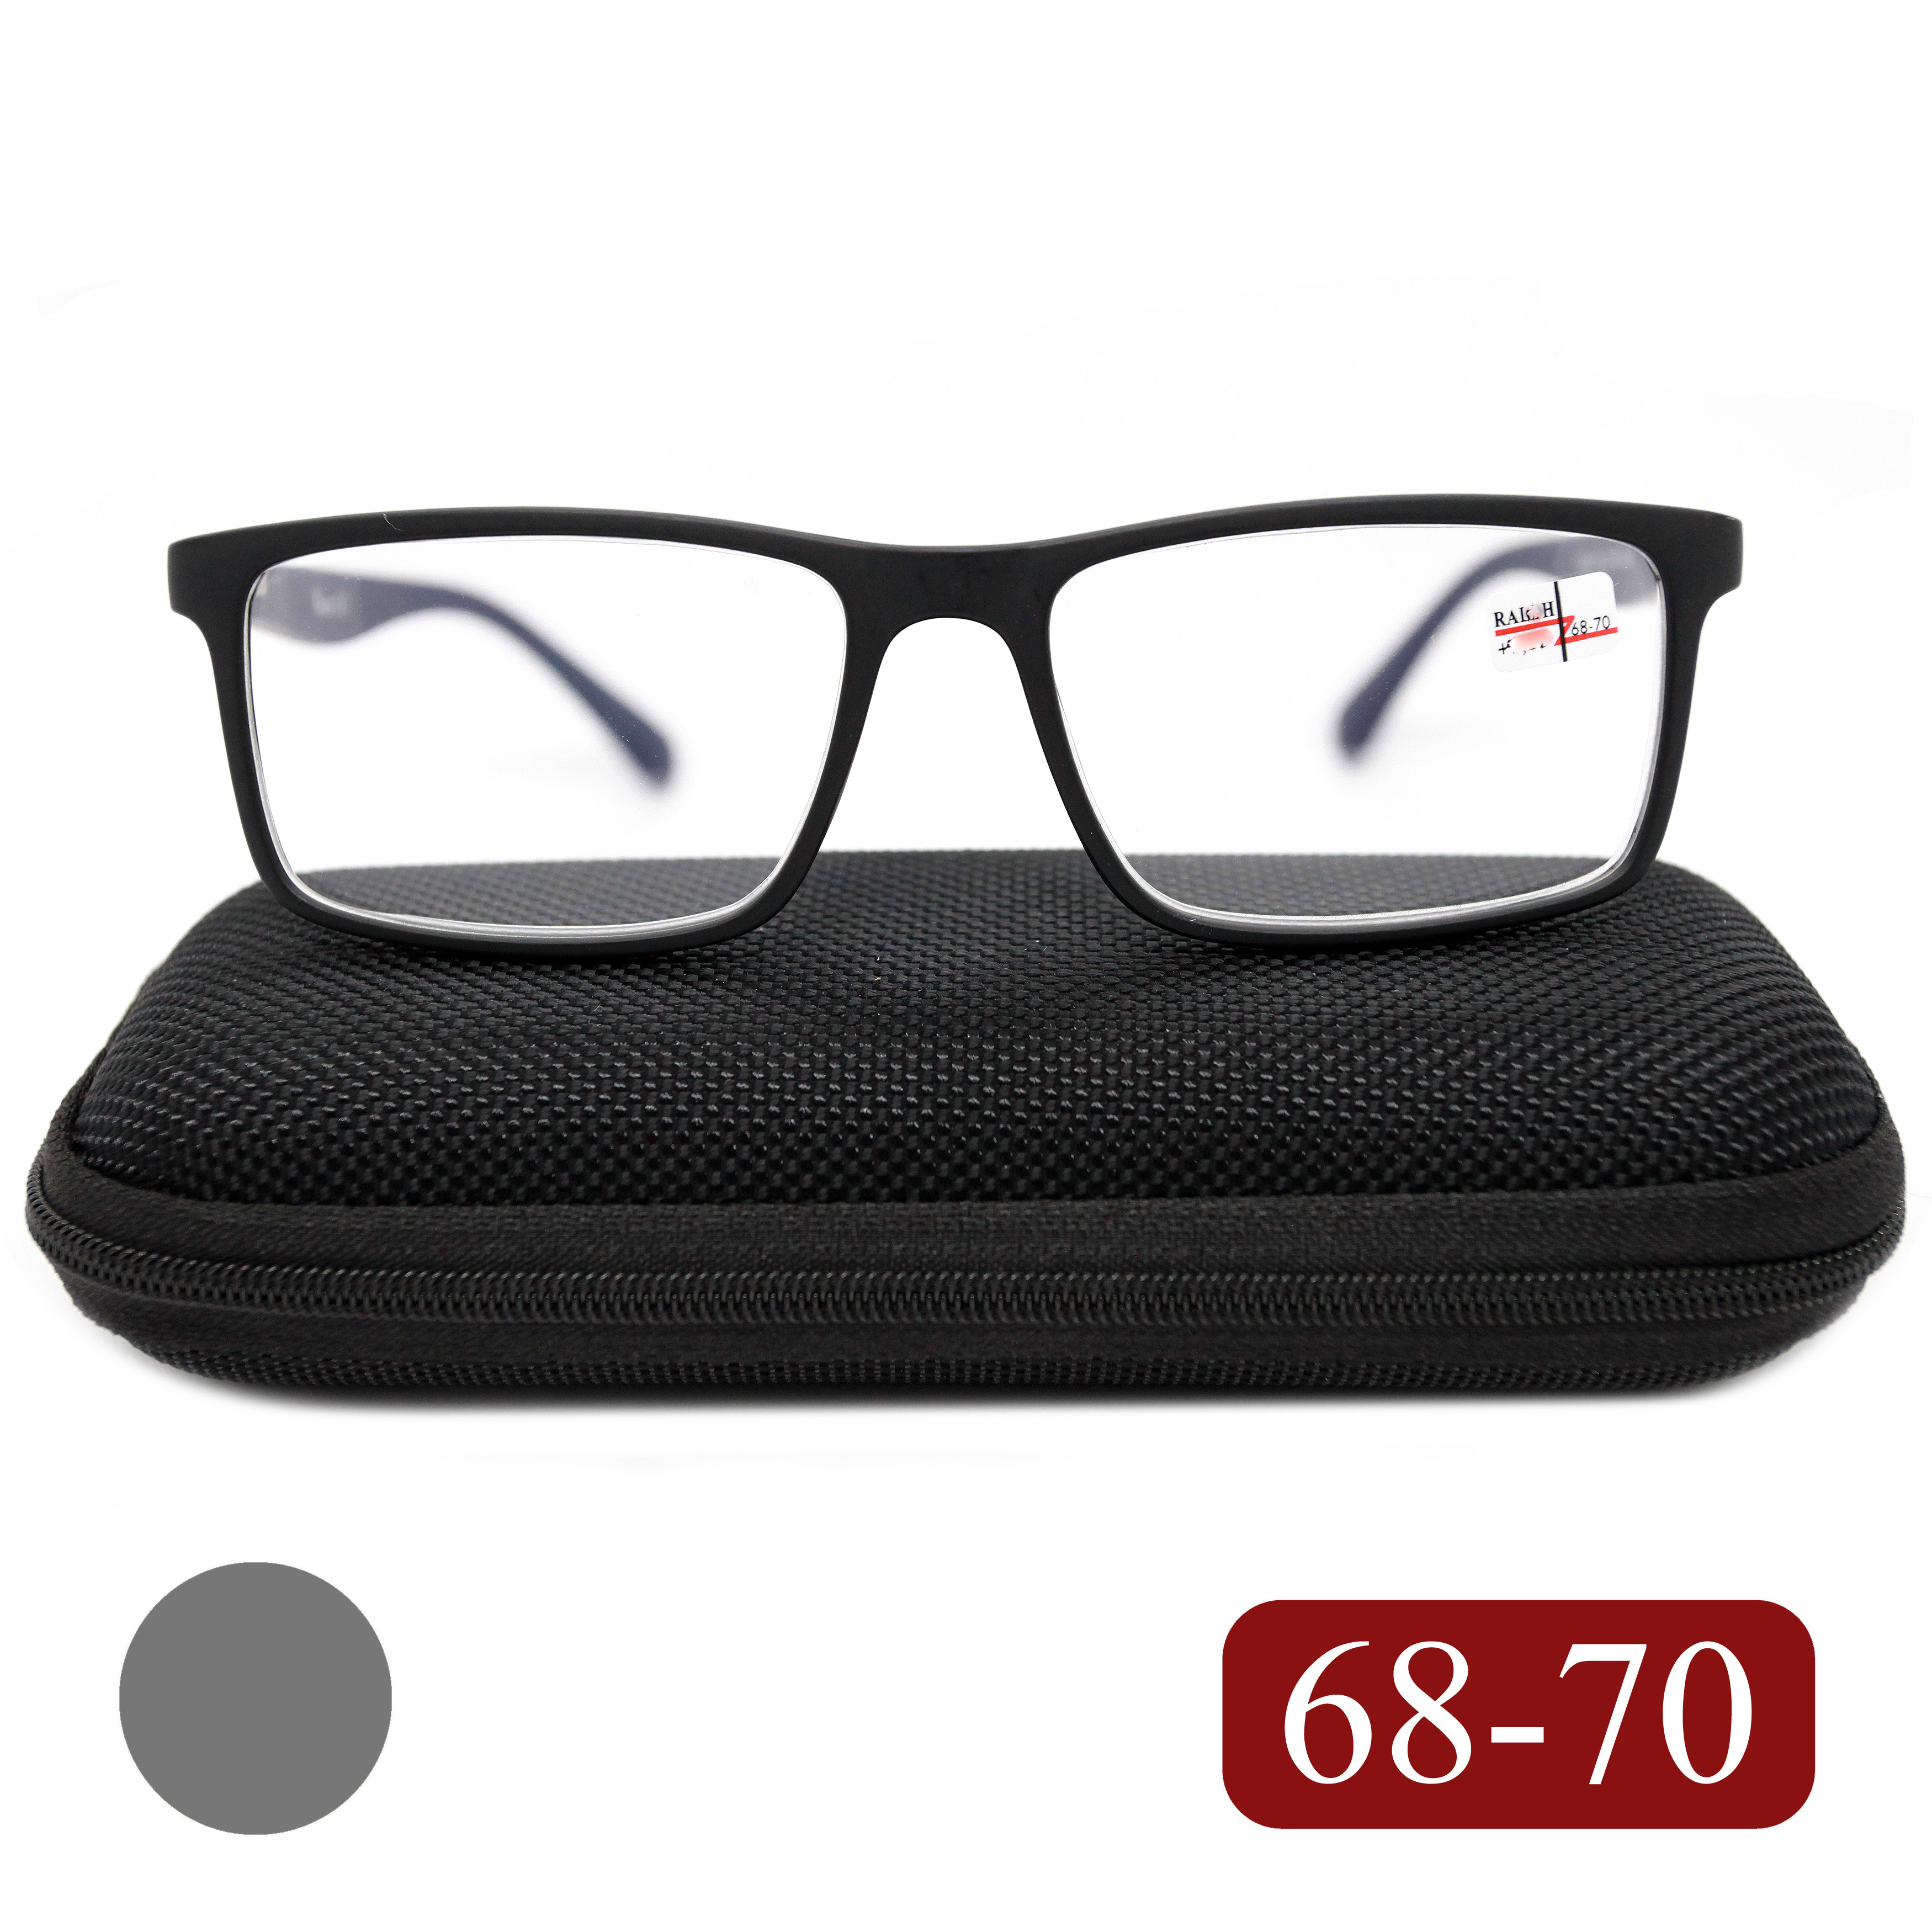 Готовые очки RALPH 0682 +3,00, для чтения, c футляром, черно-серый, РЦ 68-70